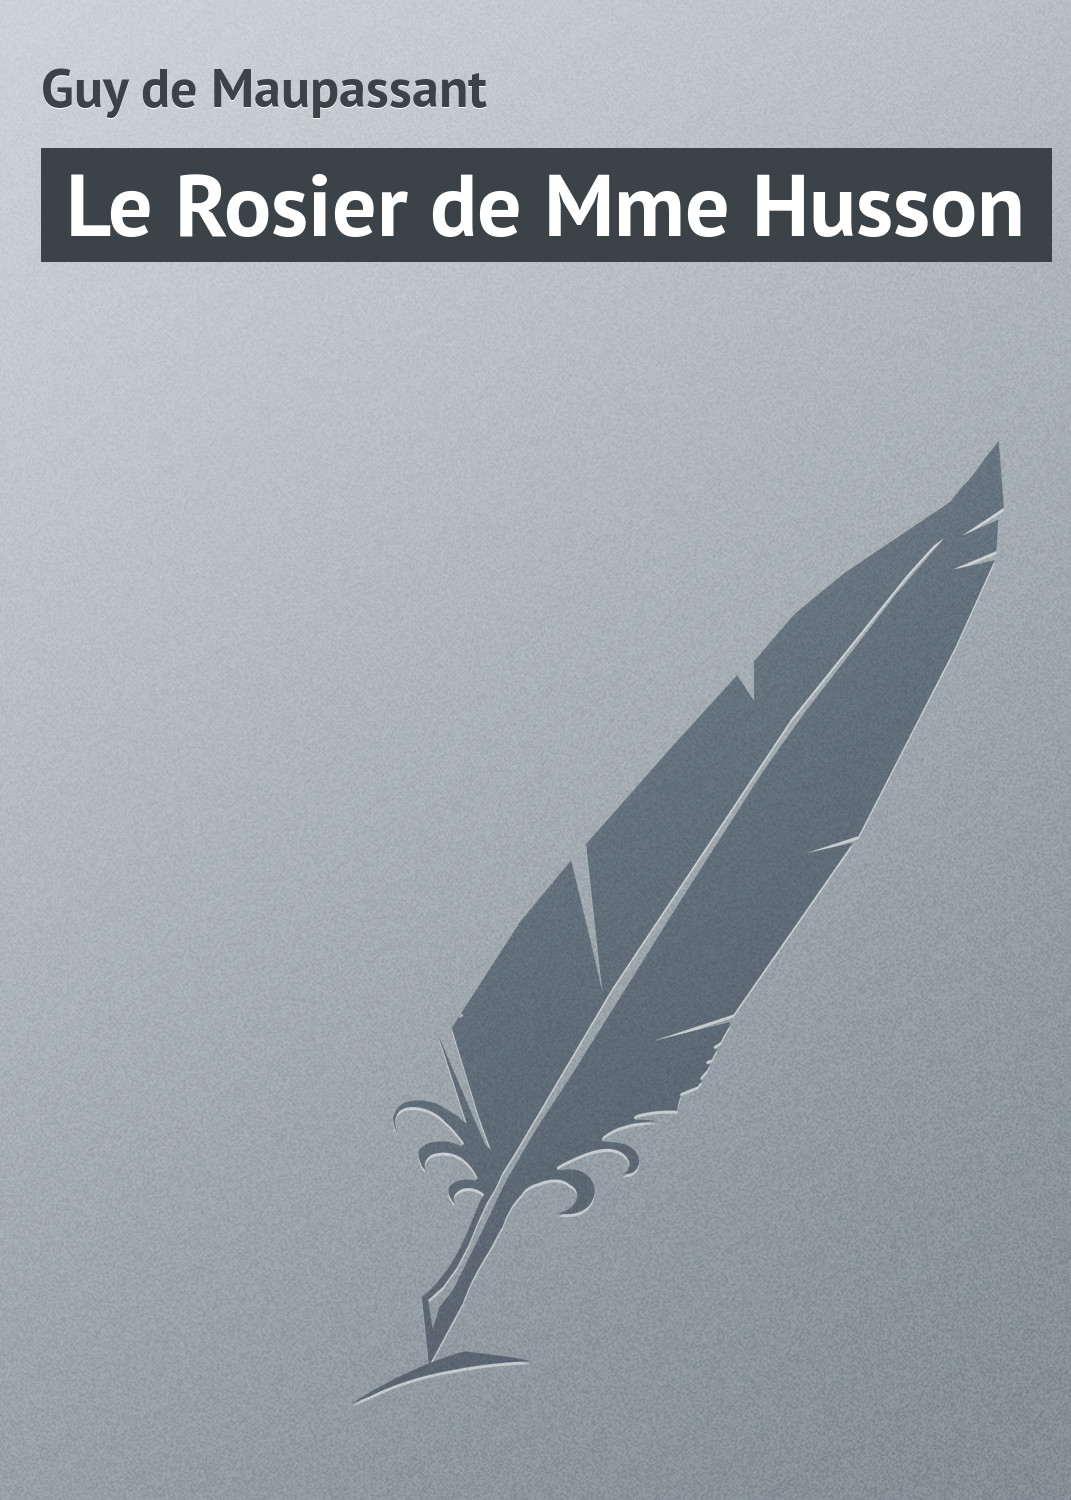 Книга Le Rosier de Mme Husson из серии , созданная Guy Maupassant, может относится к жанру Зарубежная старинная литература, Зарубежная классика. Стоимость электронной книги Le Rosier de Mme Husson с идентификатором 21105990 составляет 5.99 руб.